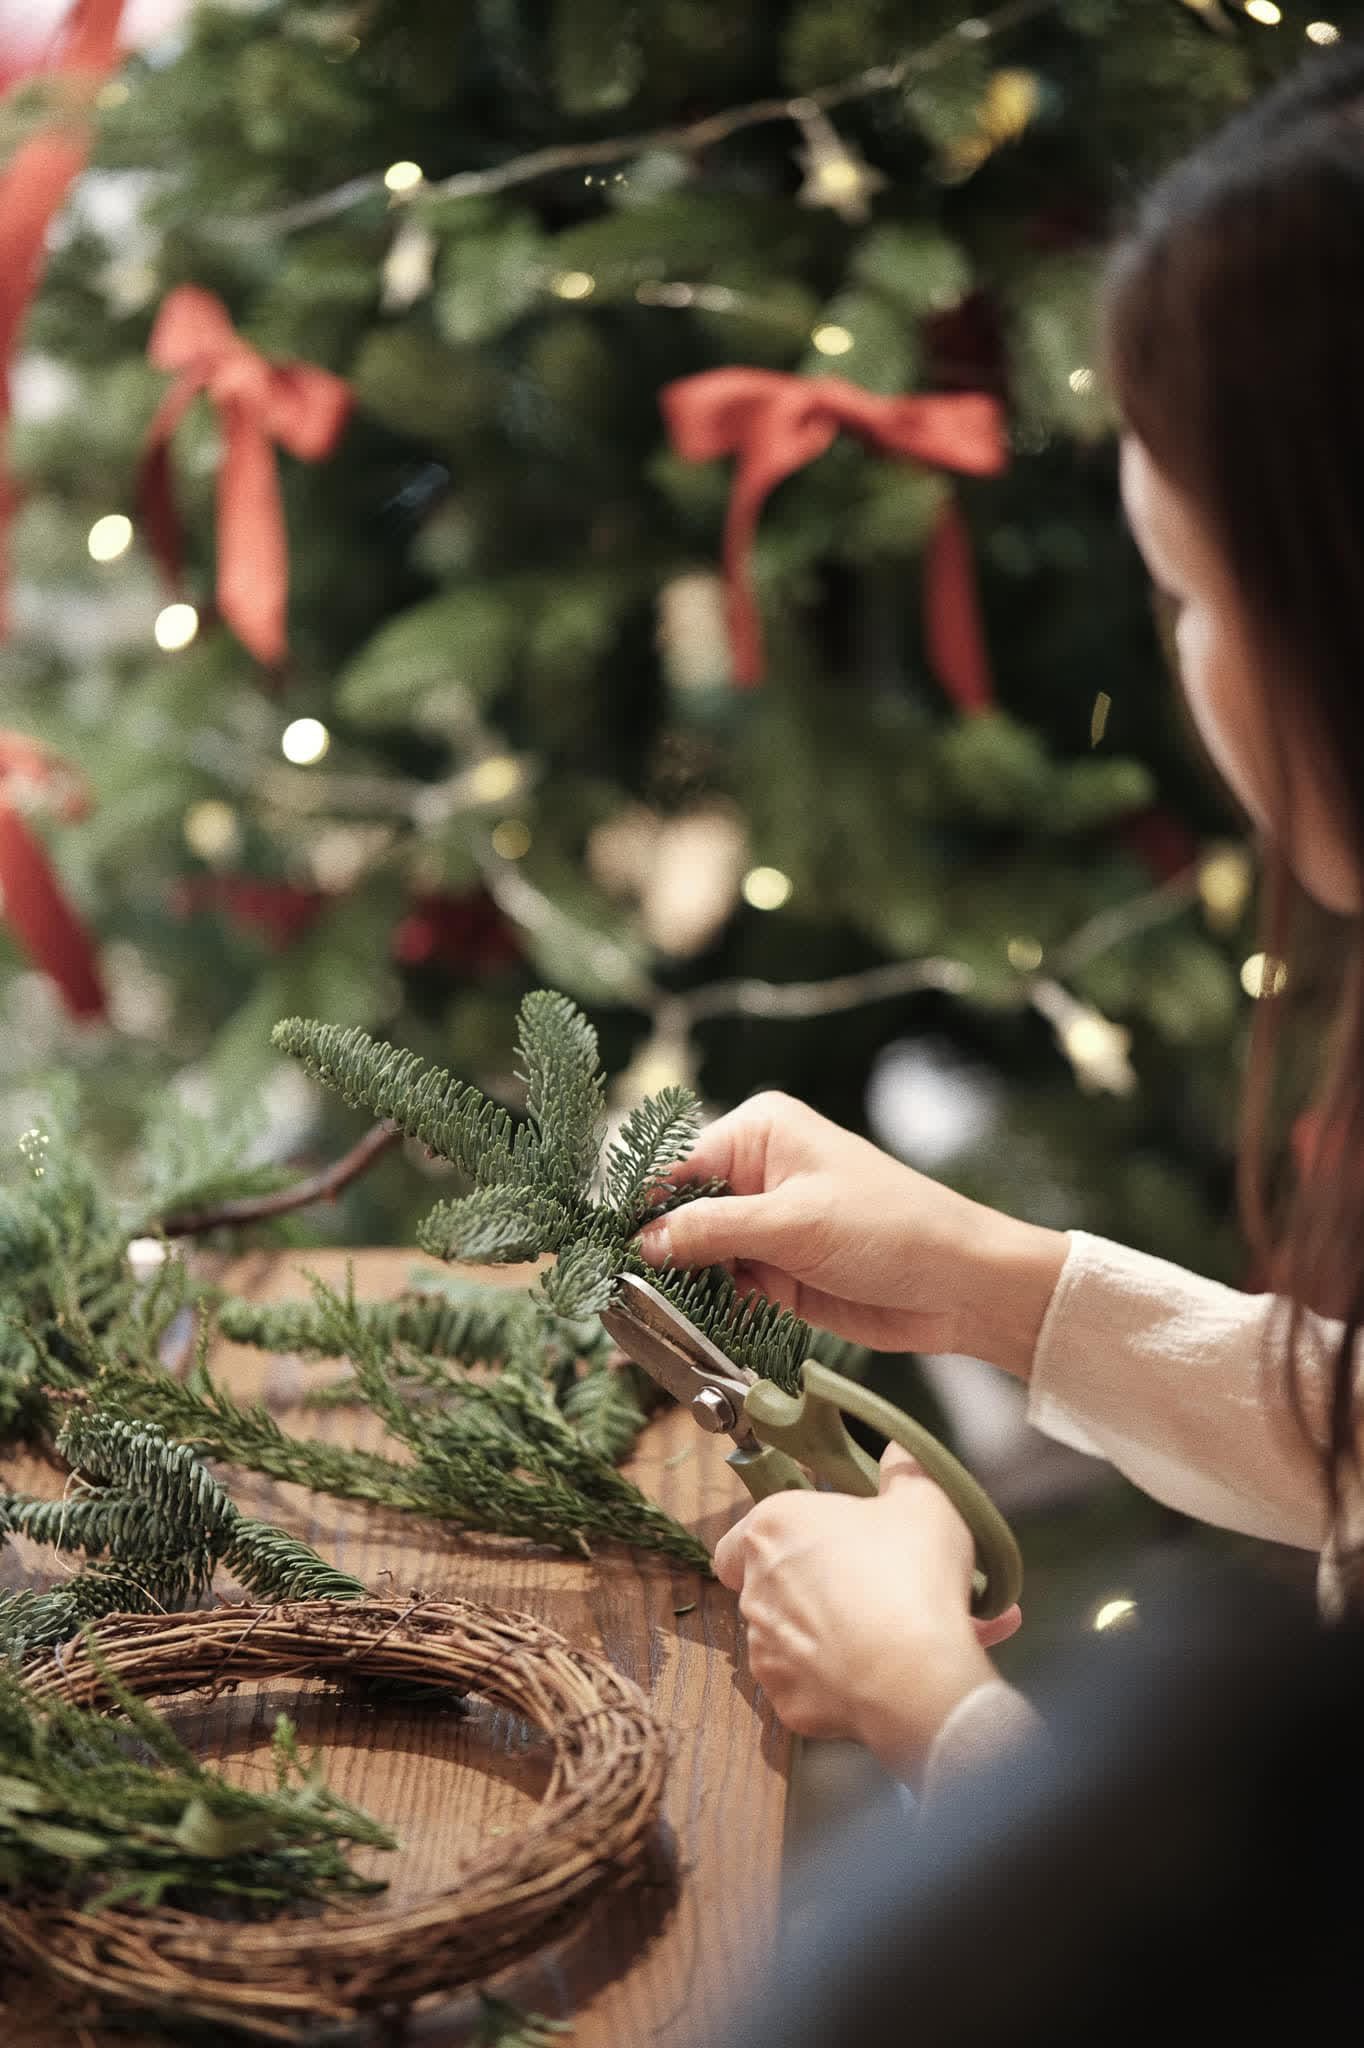 Mê cách mẹ 9x mang không khí Giáng sinh vào nhà: Đơn giản nhưng sang, cây thông trang trí dễ mà vẫn nổi bật